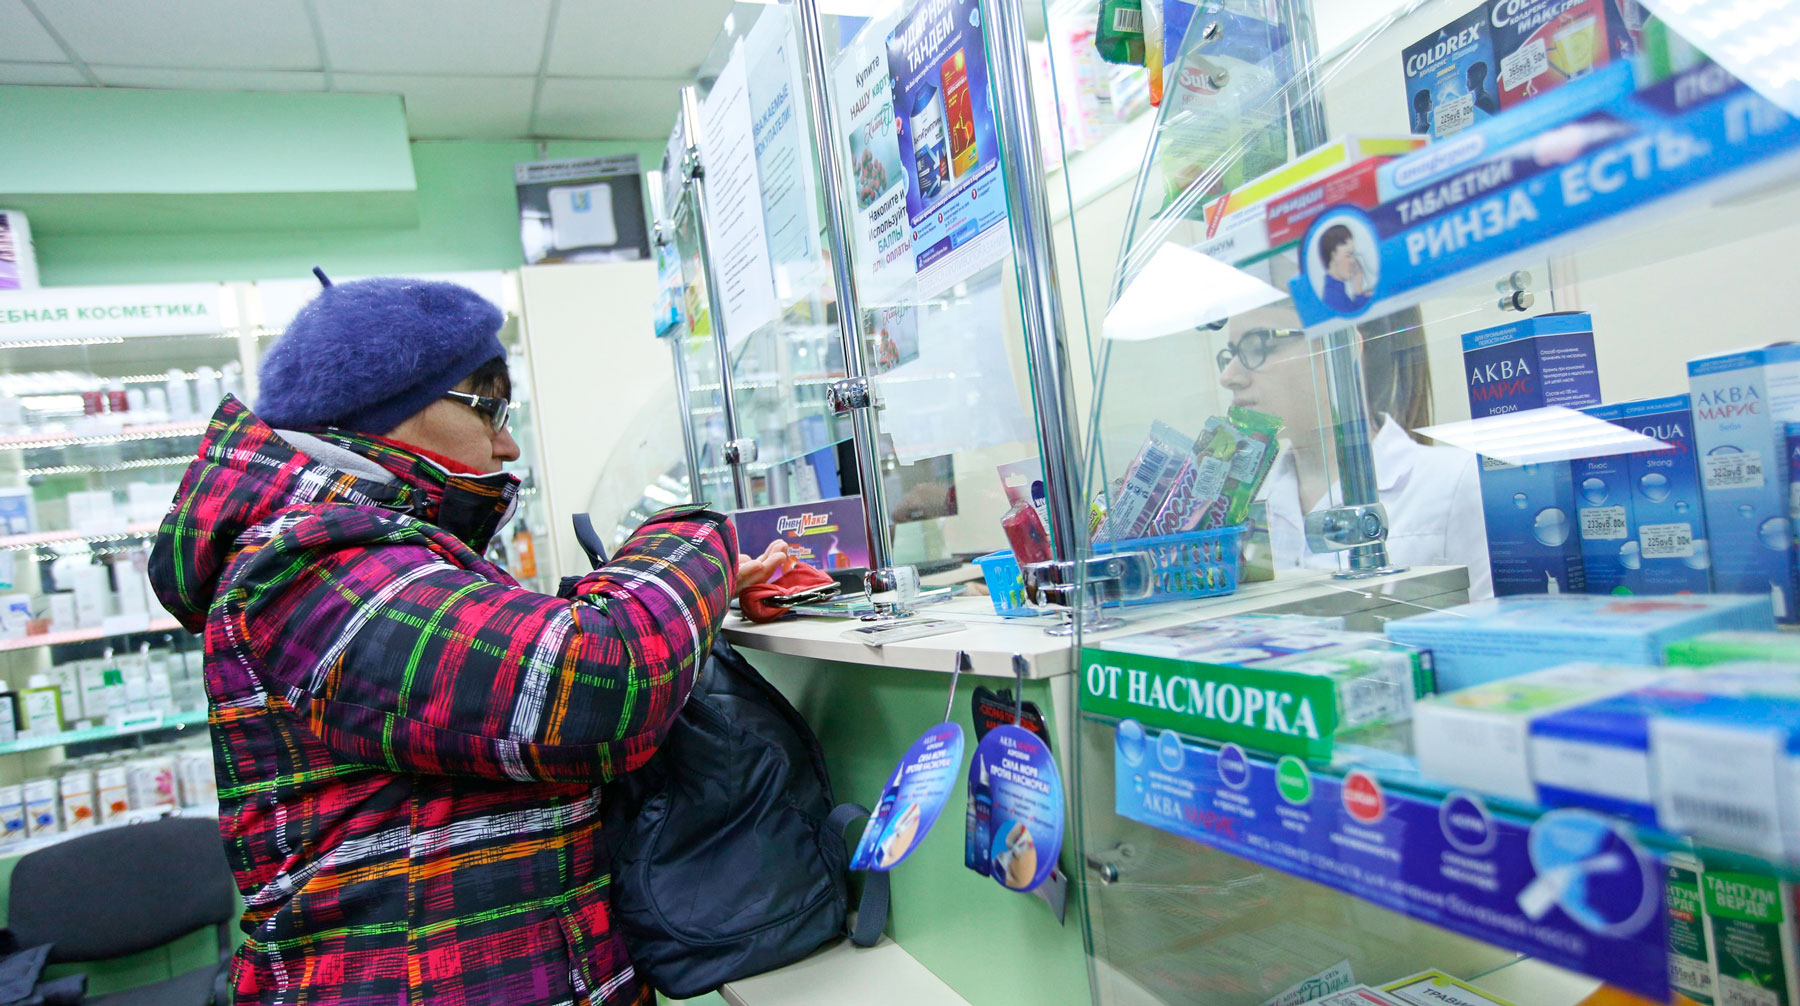 Правительство пока не увидит законопроекта о продаже медикаментов в магазинах Фото: © Агентство Москва